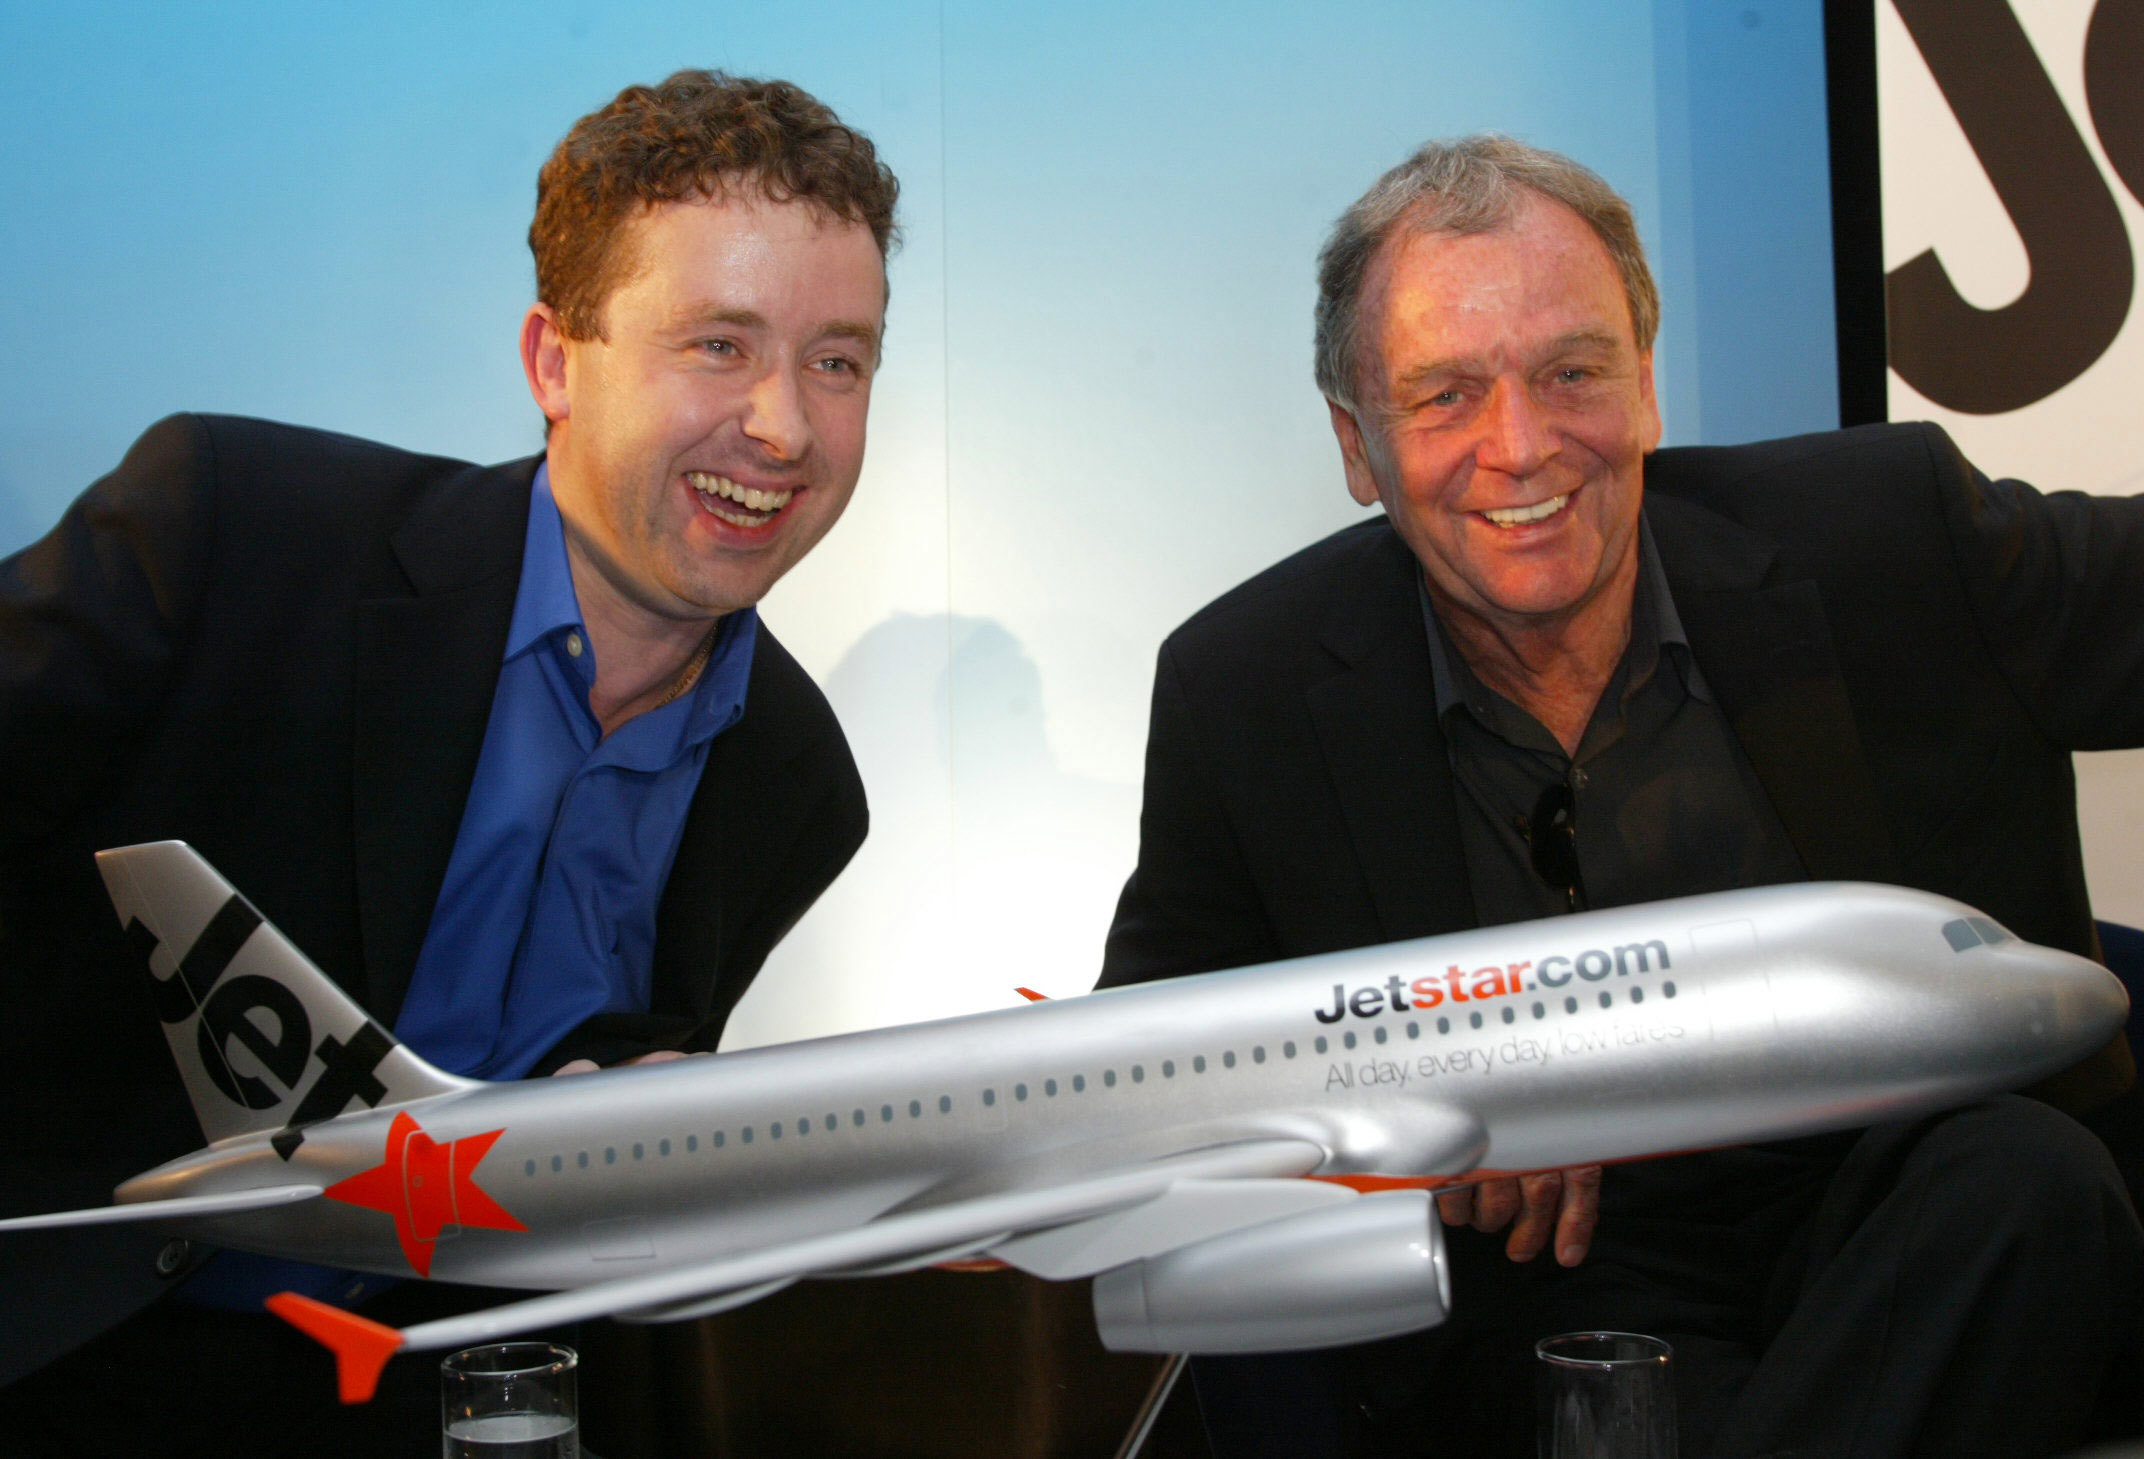 Prior to heading up Qantas, Alan Joyce was chief executive of Jetstar Airways